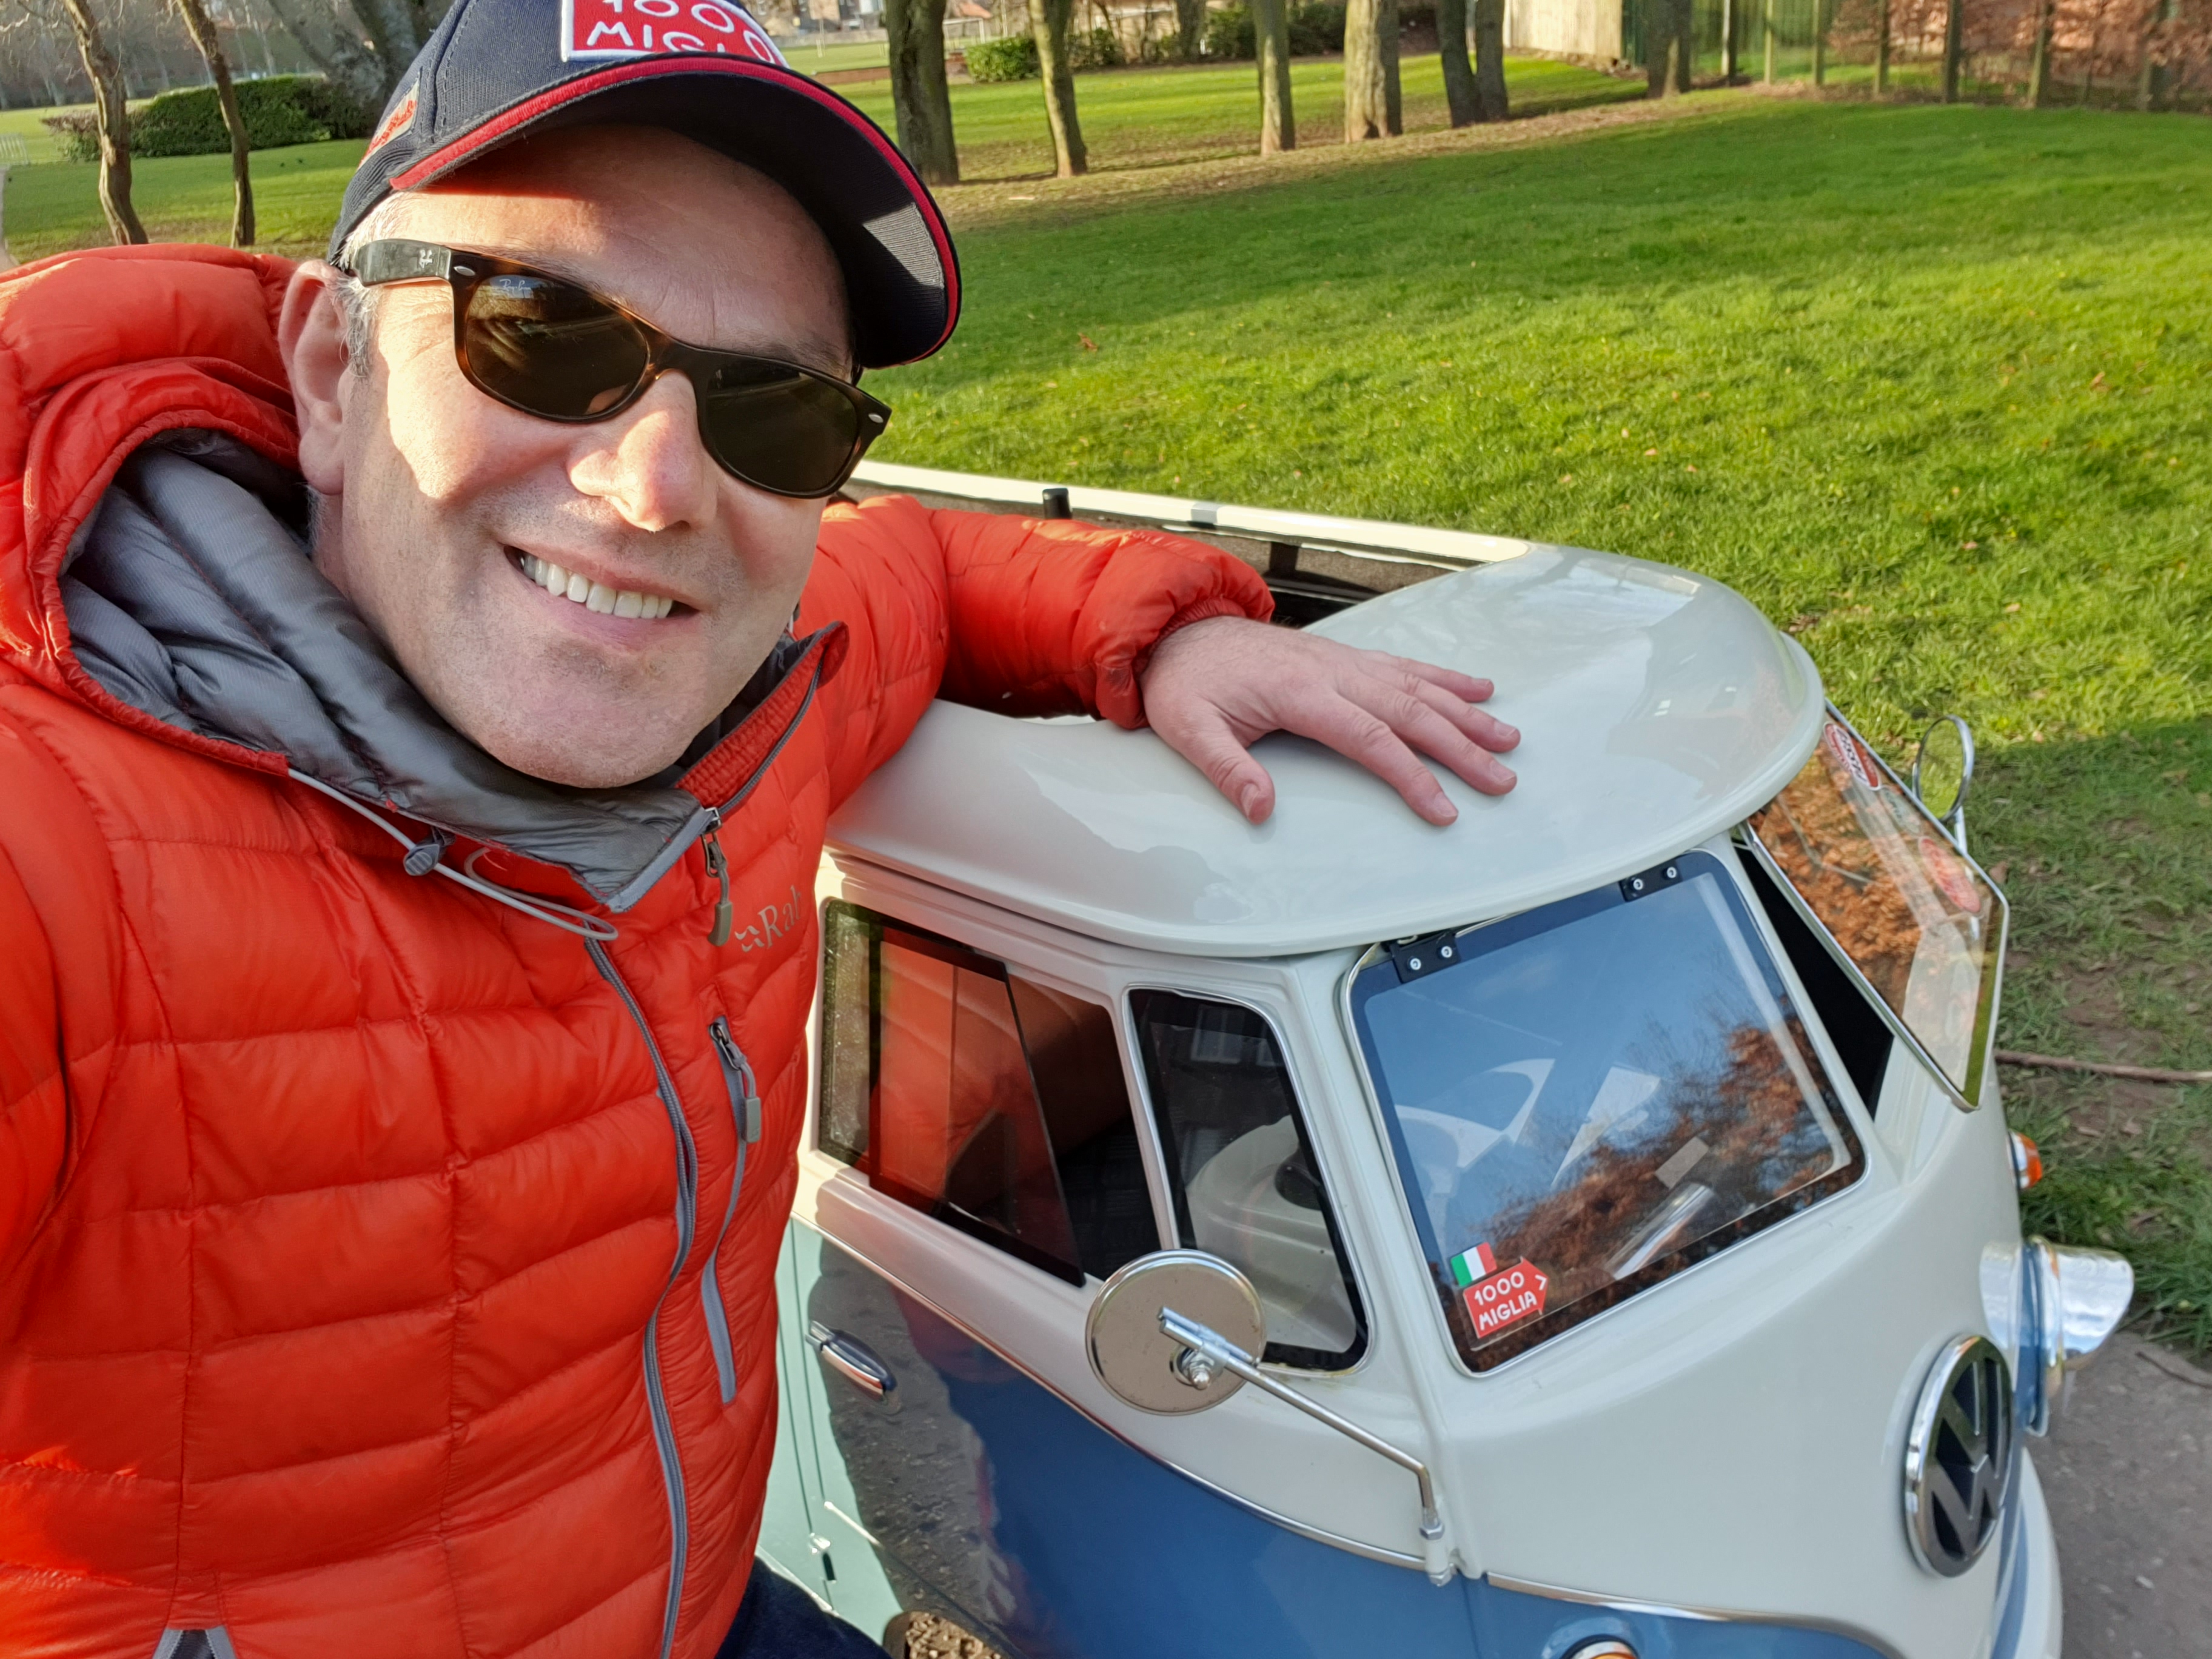 Jason Black liebt es, mit seinem umgebauten Mobilitätsroller durch Schottland zu reisen